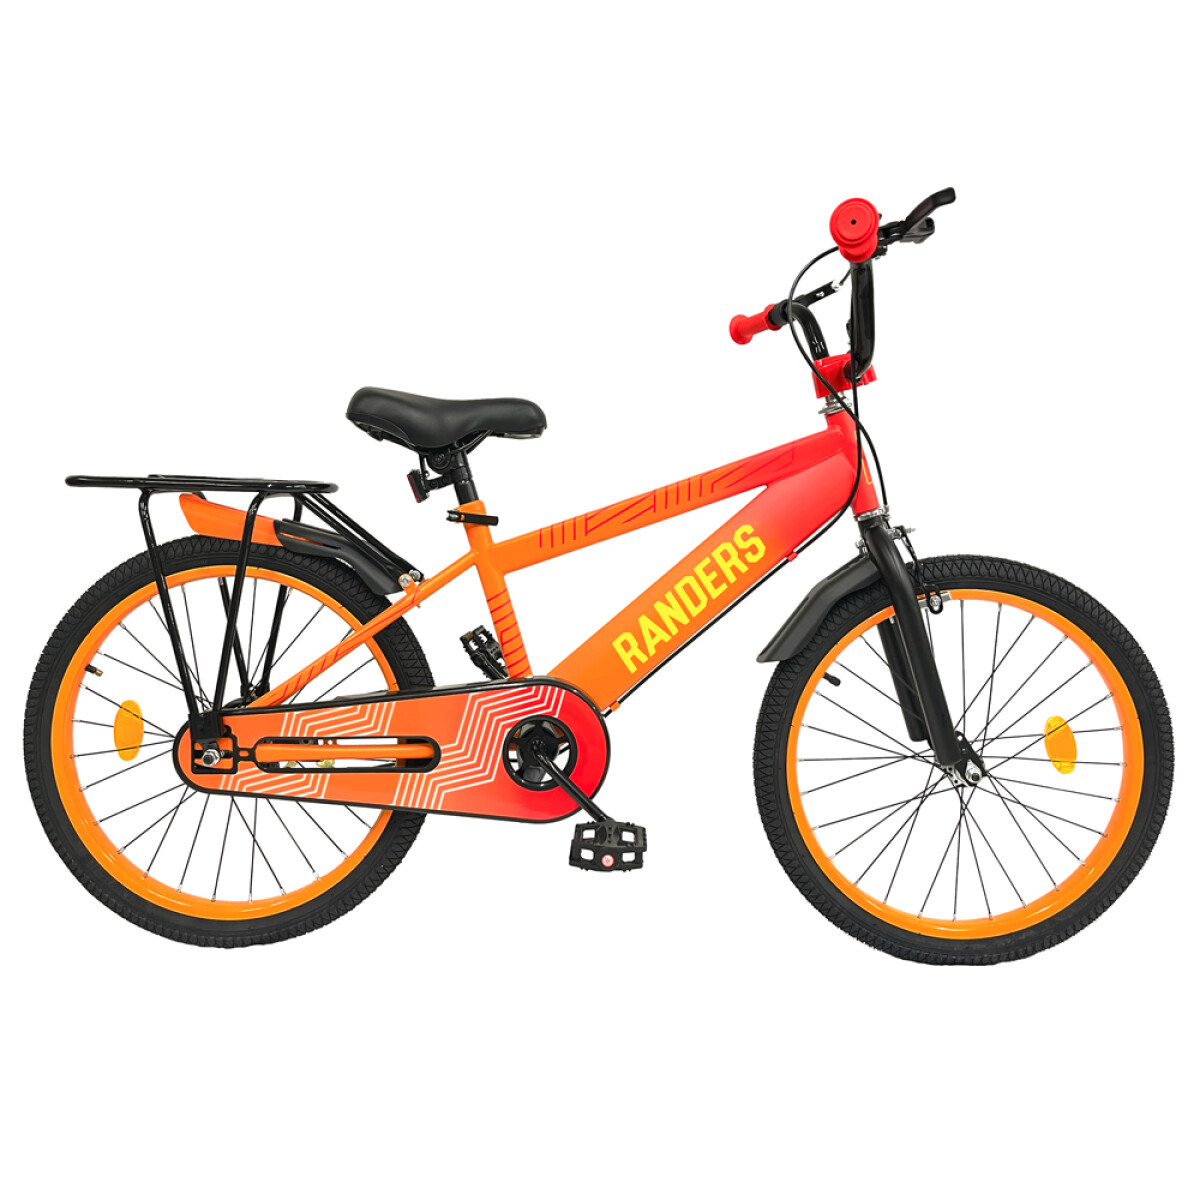 Bicicleta infantil rodado 20 Sin Canasto - Naranja 